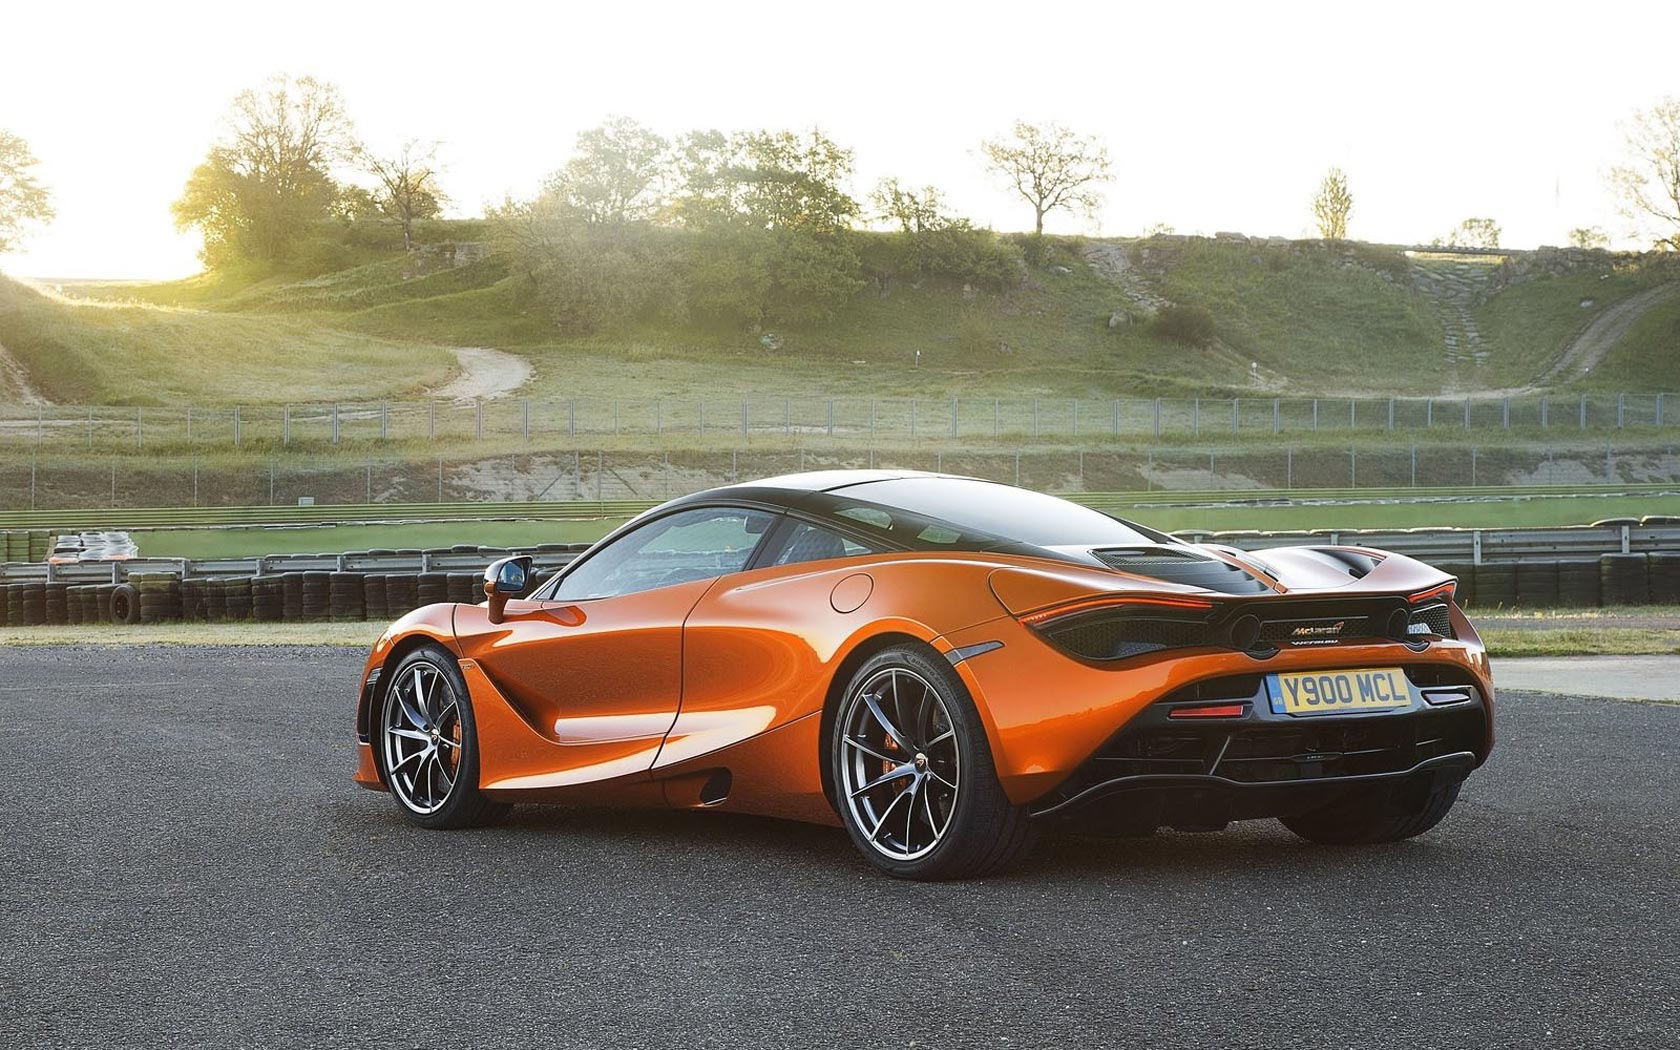  McLaren 720S 